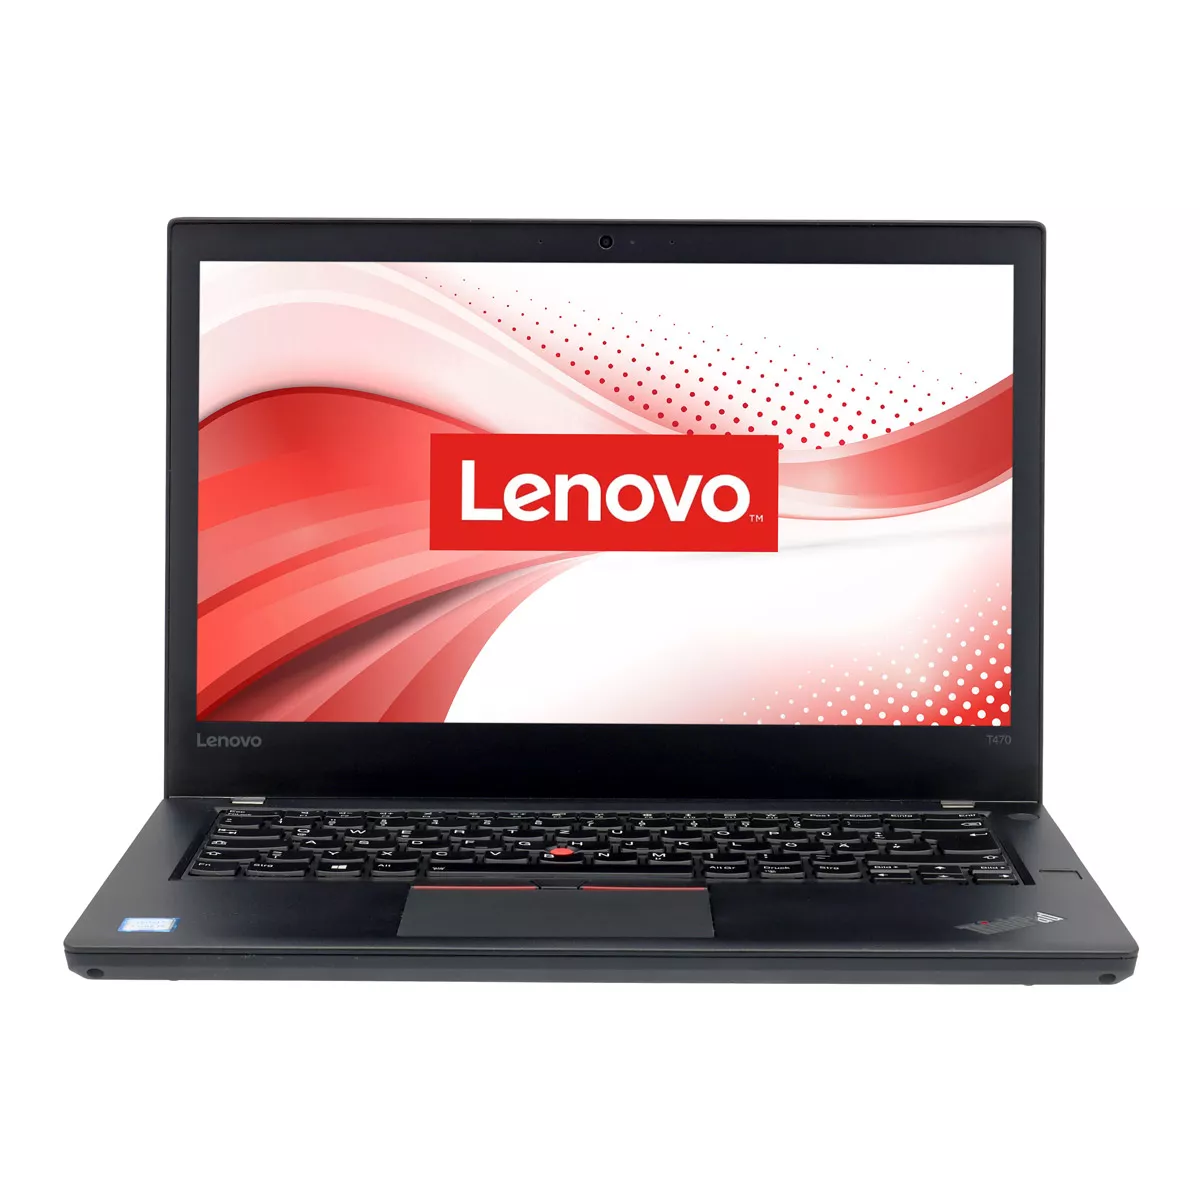 Lenovo ThinkPad T470 Core i7 7600U 240 GB m.2 SSD Webcam B-Ware